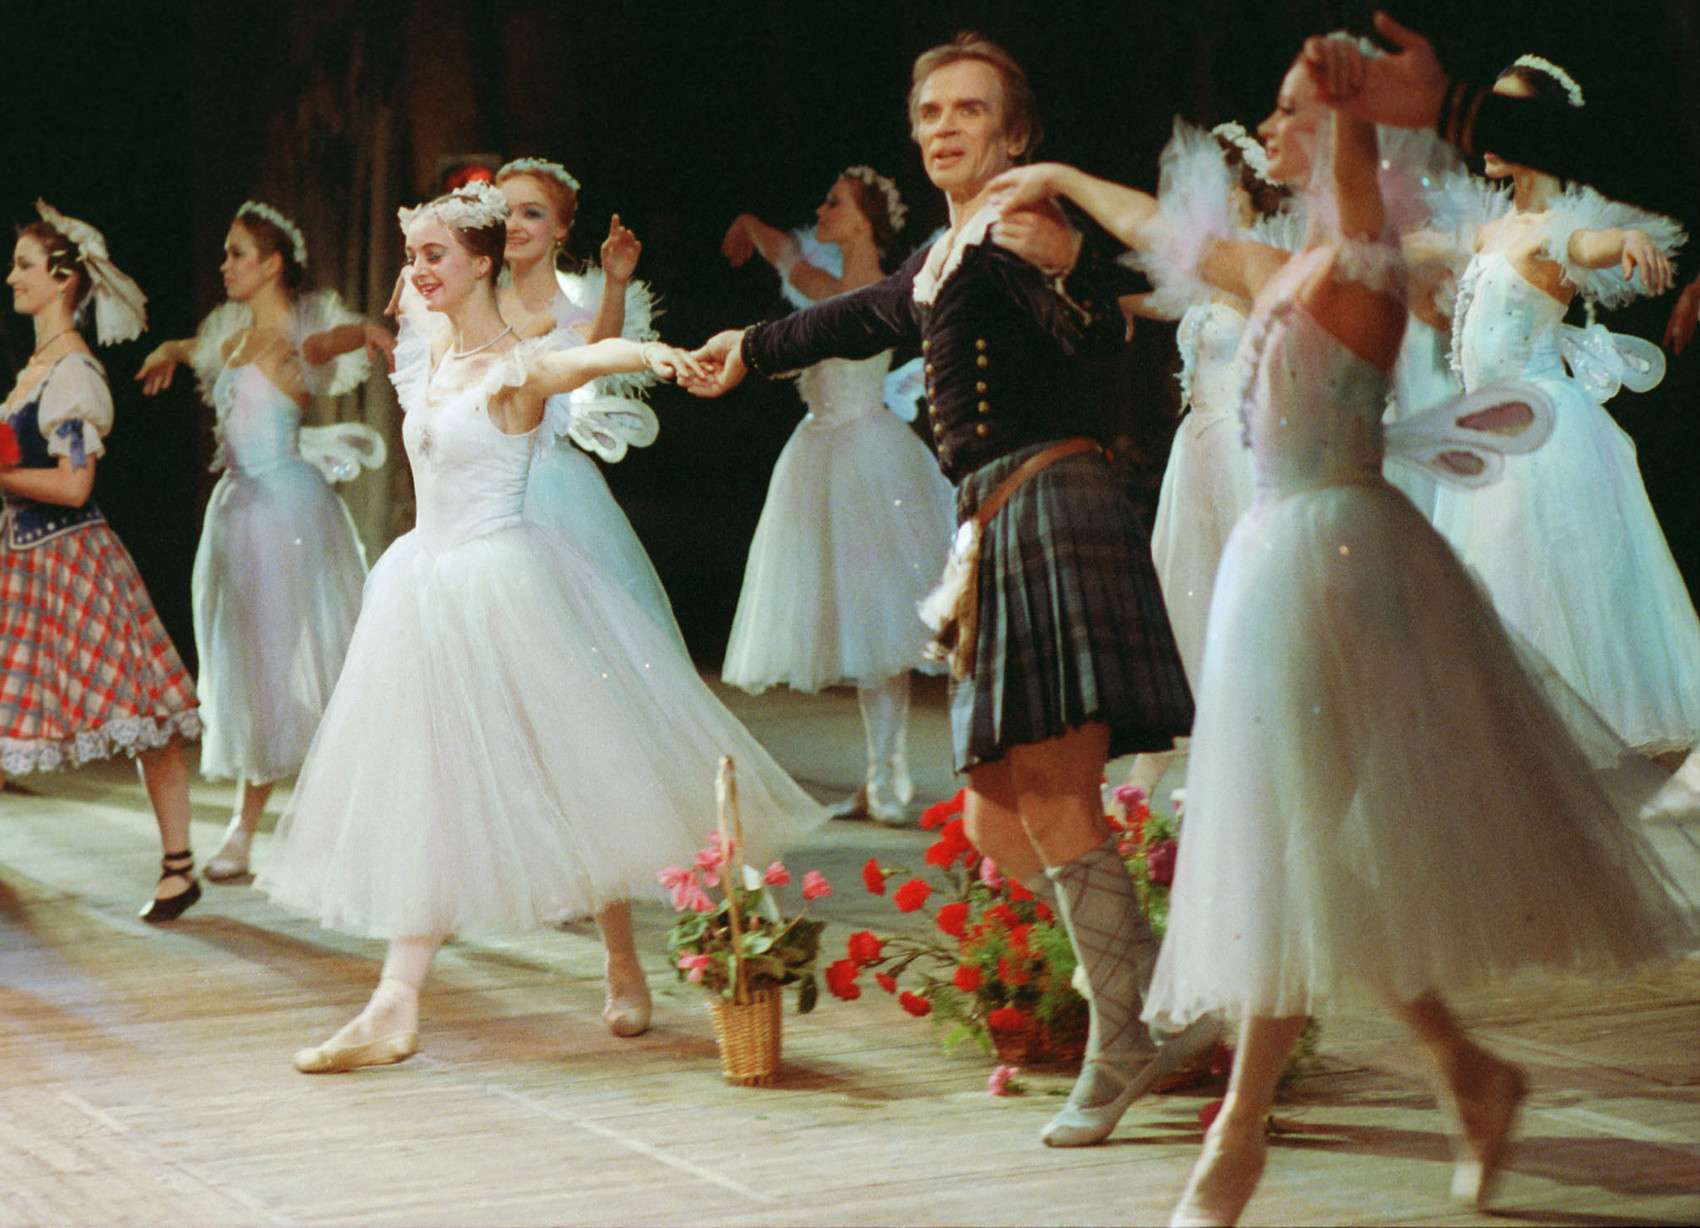 Nach 30 Jahren nach der Flucht kehrte Nurejew nach Leningrad zurück, um im Kirow-Theater für Oper und Ballett wieder aufzutreten.